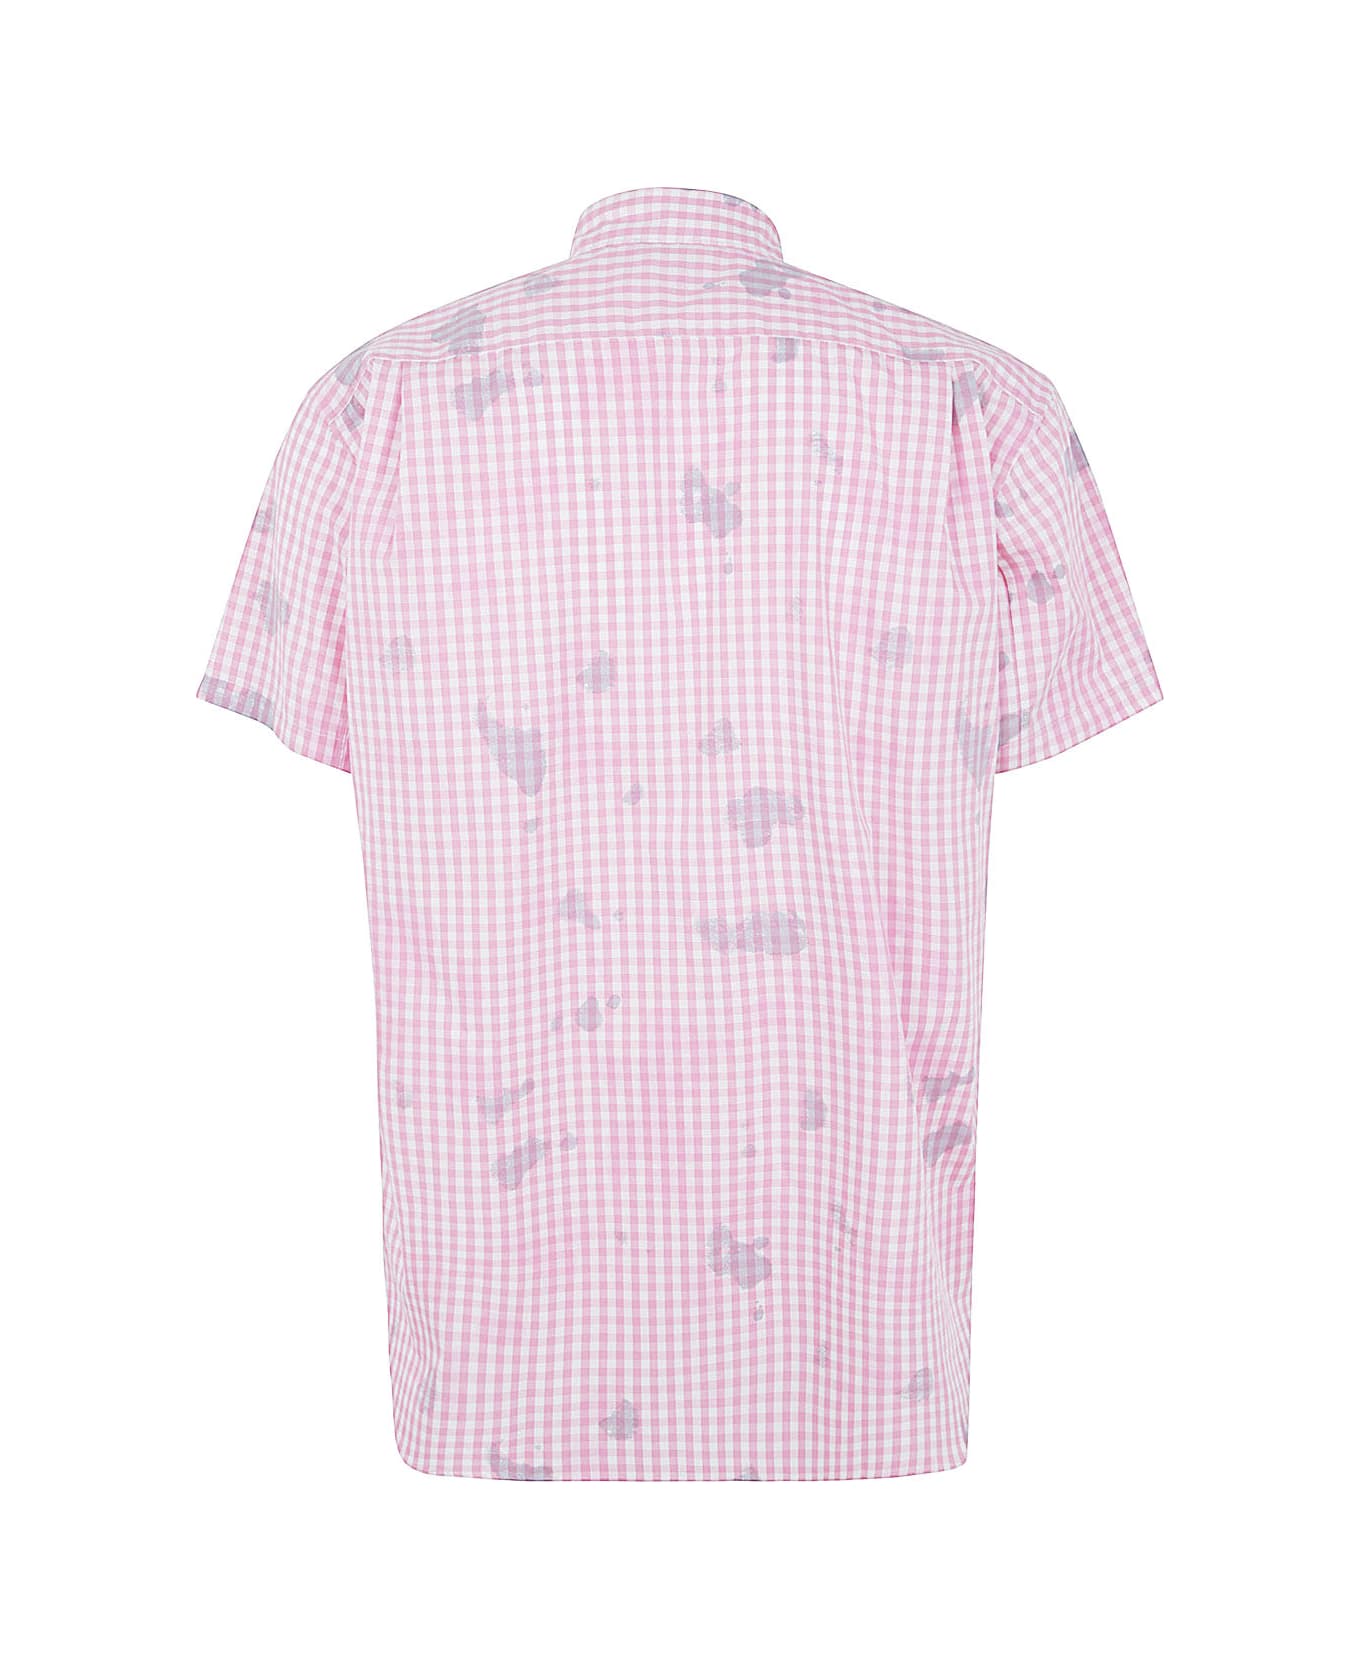 Comme des Garçons Shirt Mens Shirt Woven - Pink Check シャツ